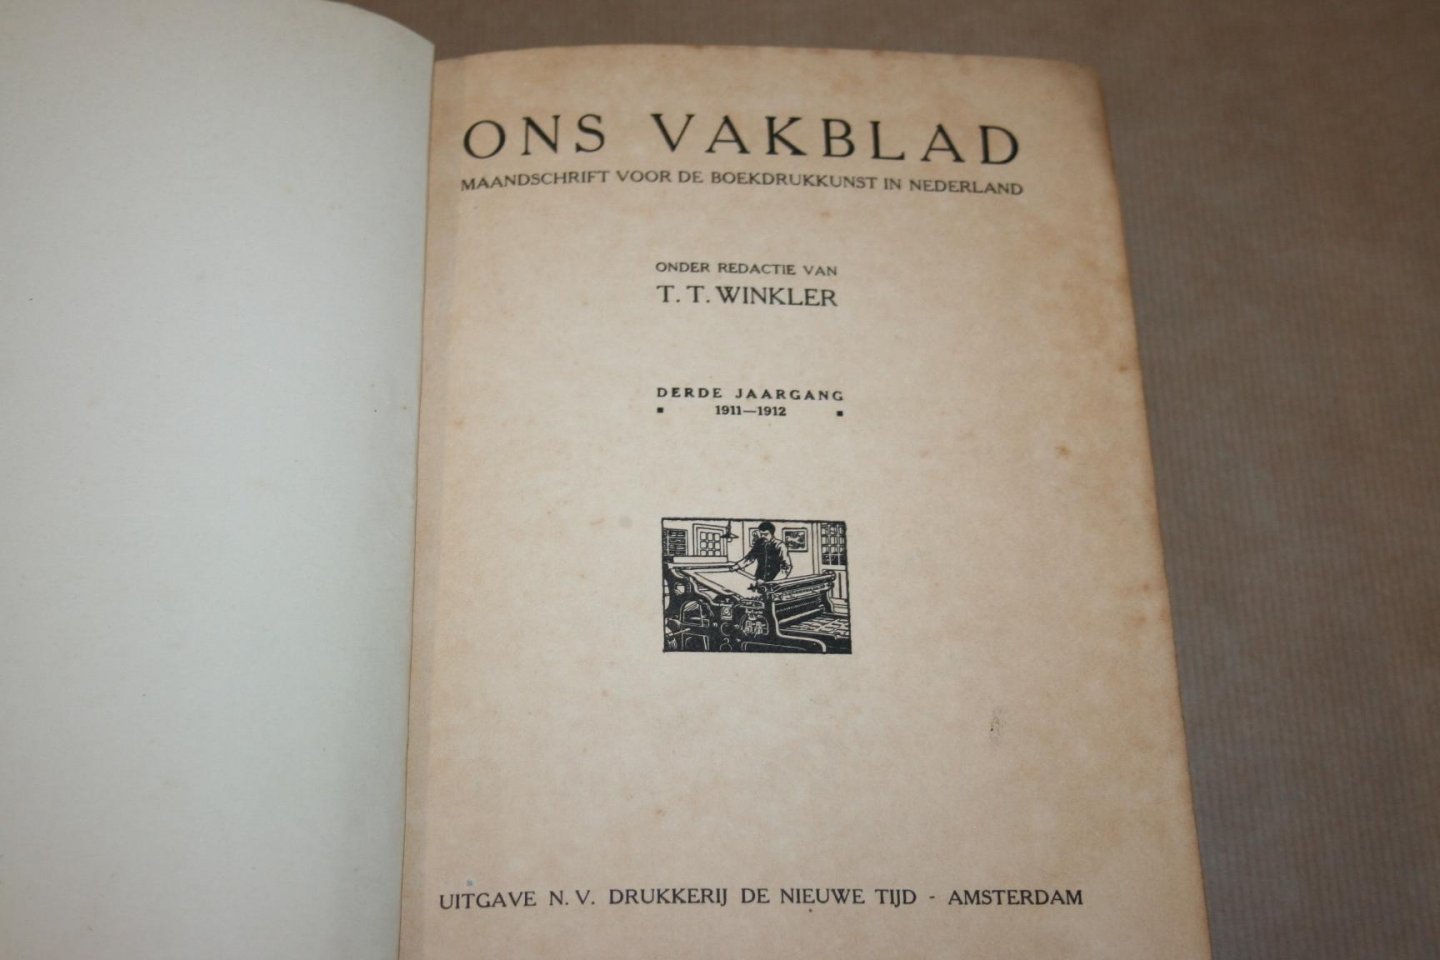  - Ons Vakblad Maandschrift voor de Boekdrukkunst in Nederland -- Derde jaargang 1911-1912